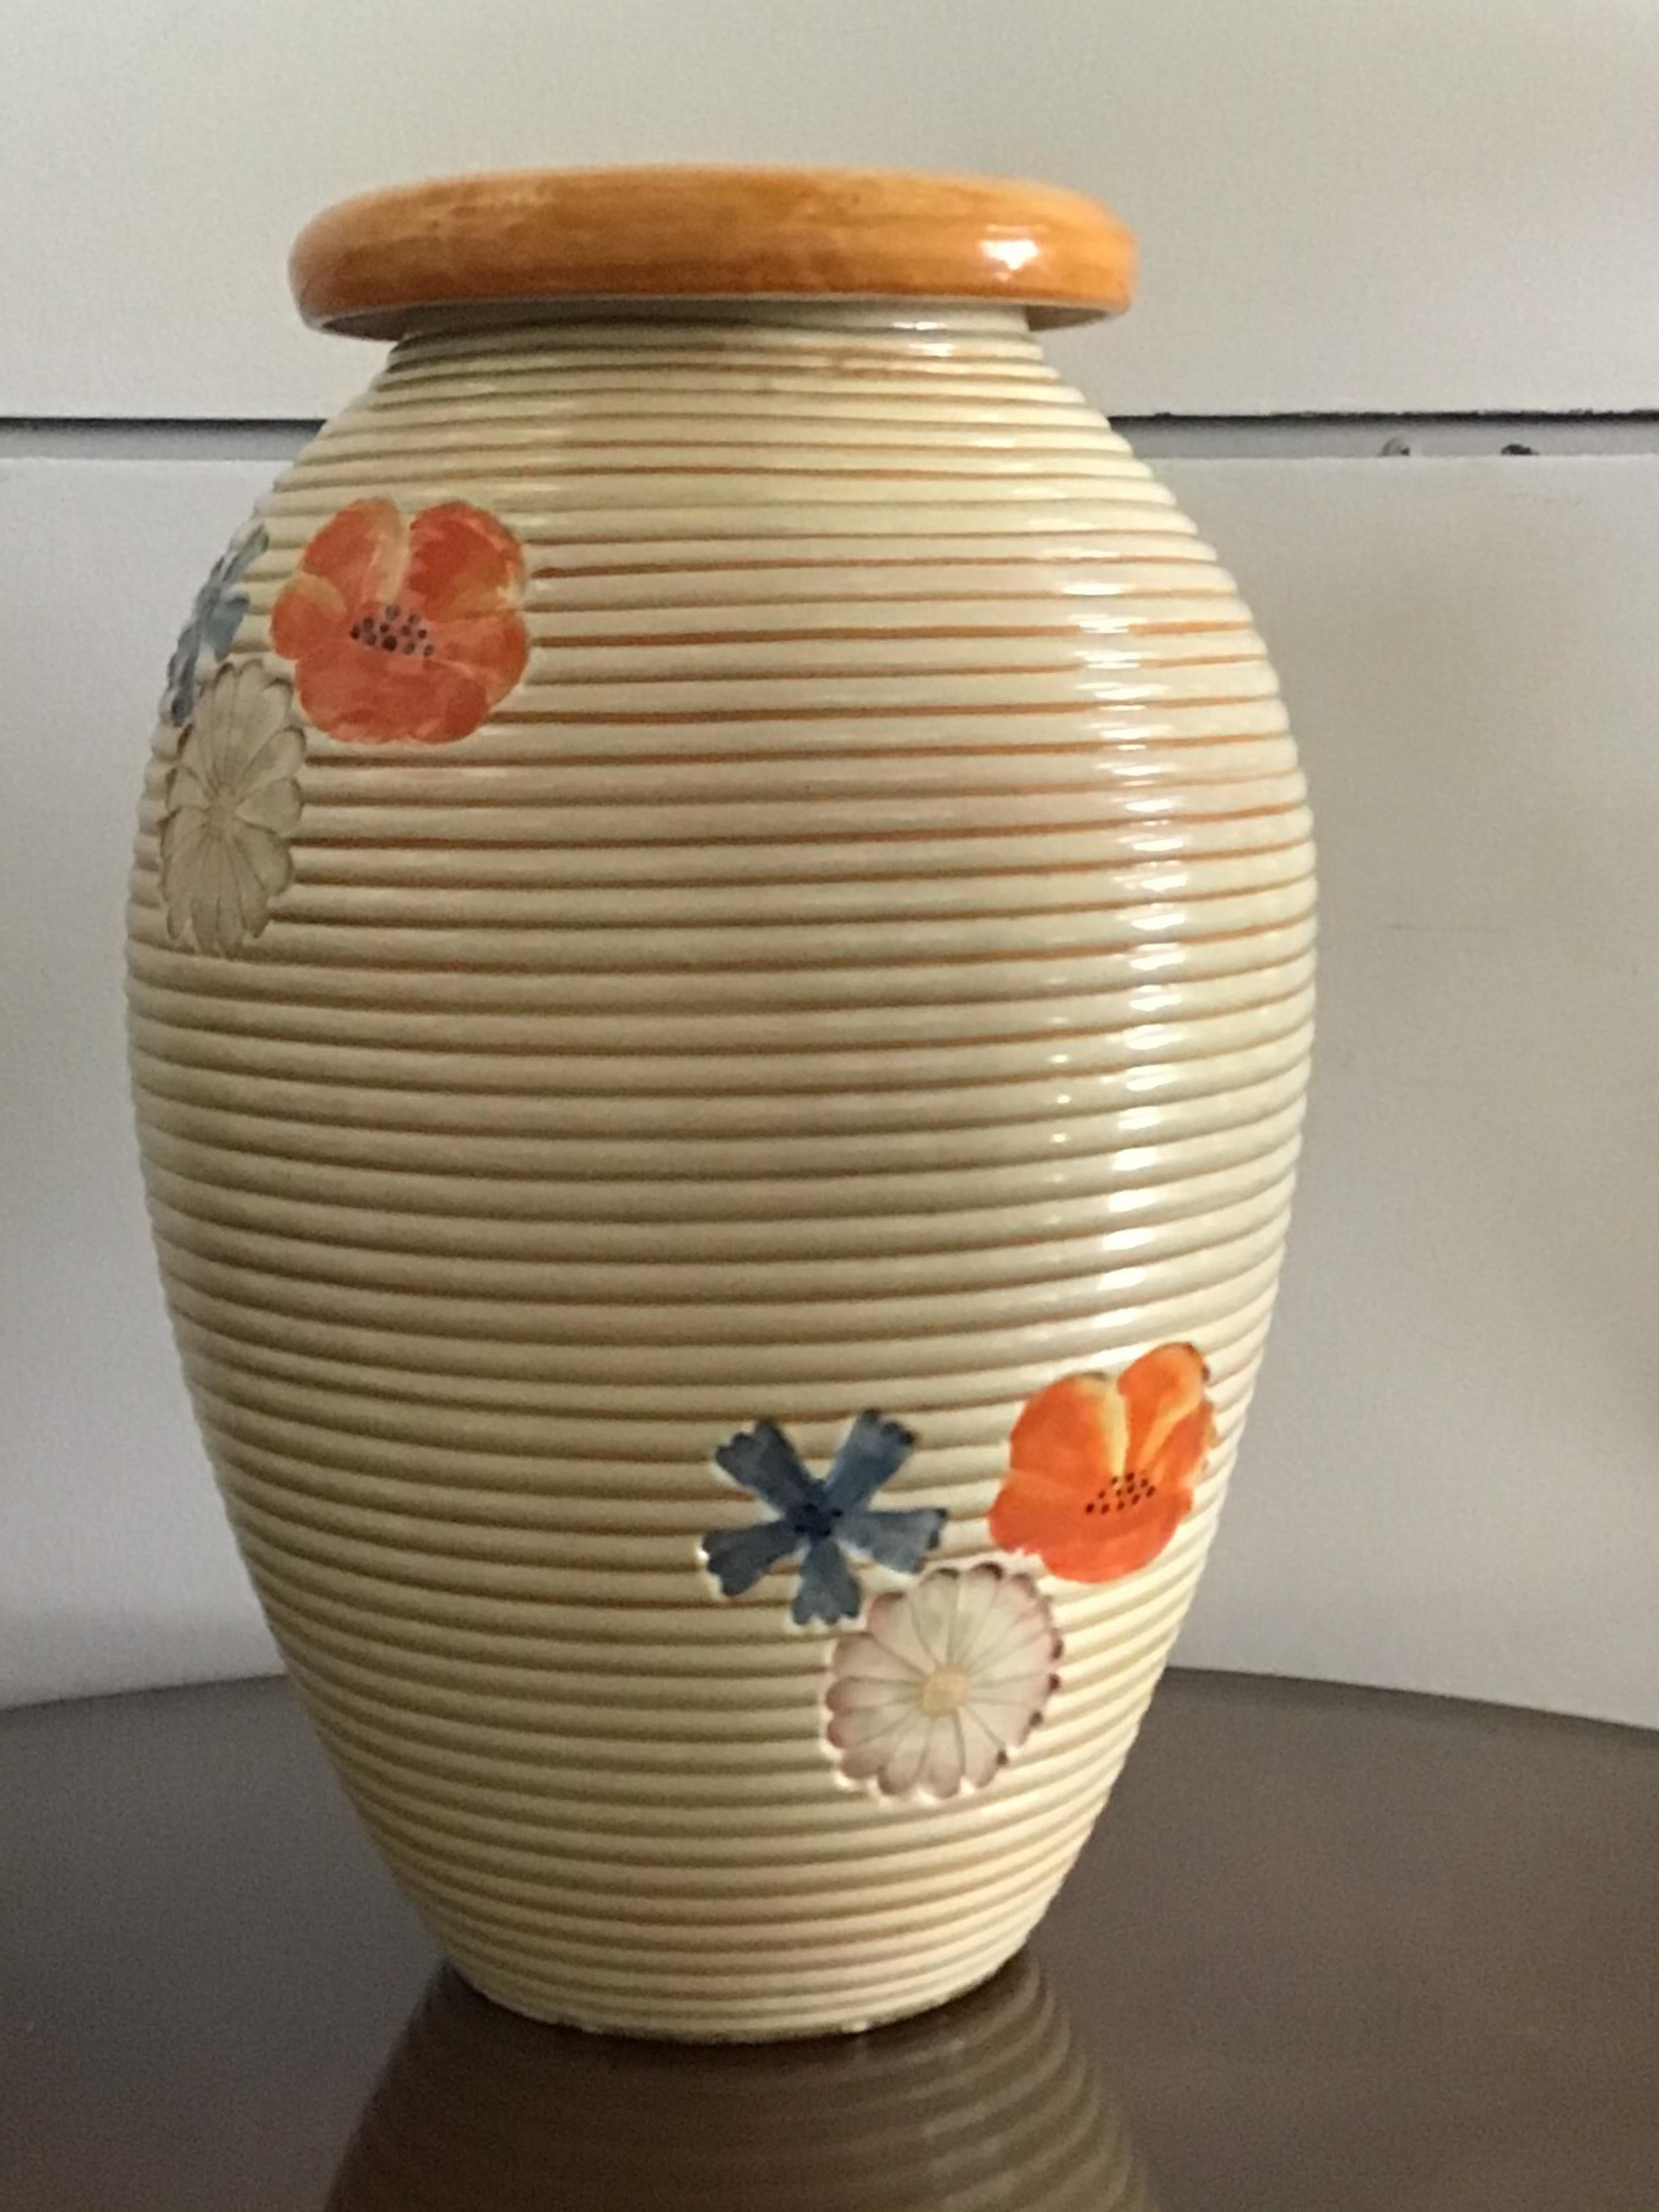 Pucci Umbertide Vase /Umbrella Stand Ceramic, 1950, Italy For Sale 3